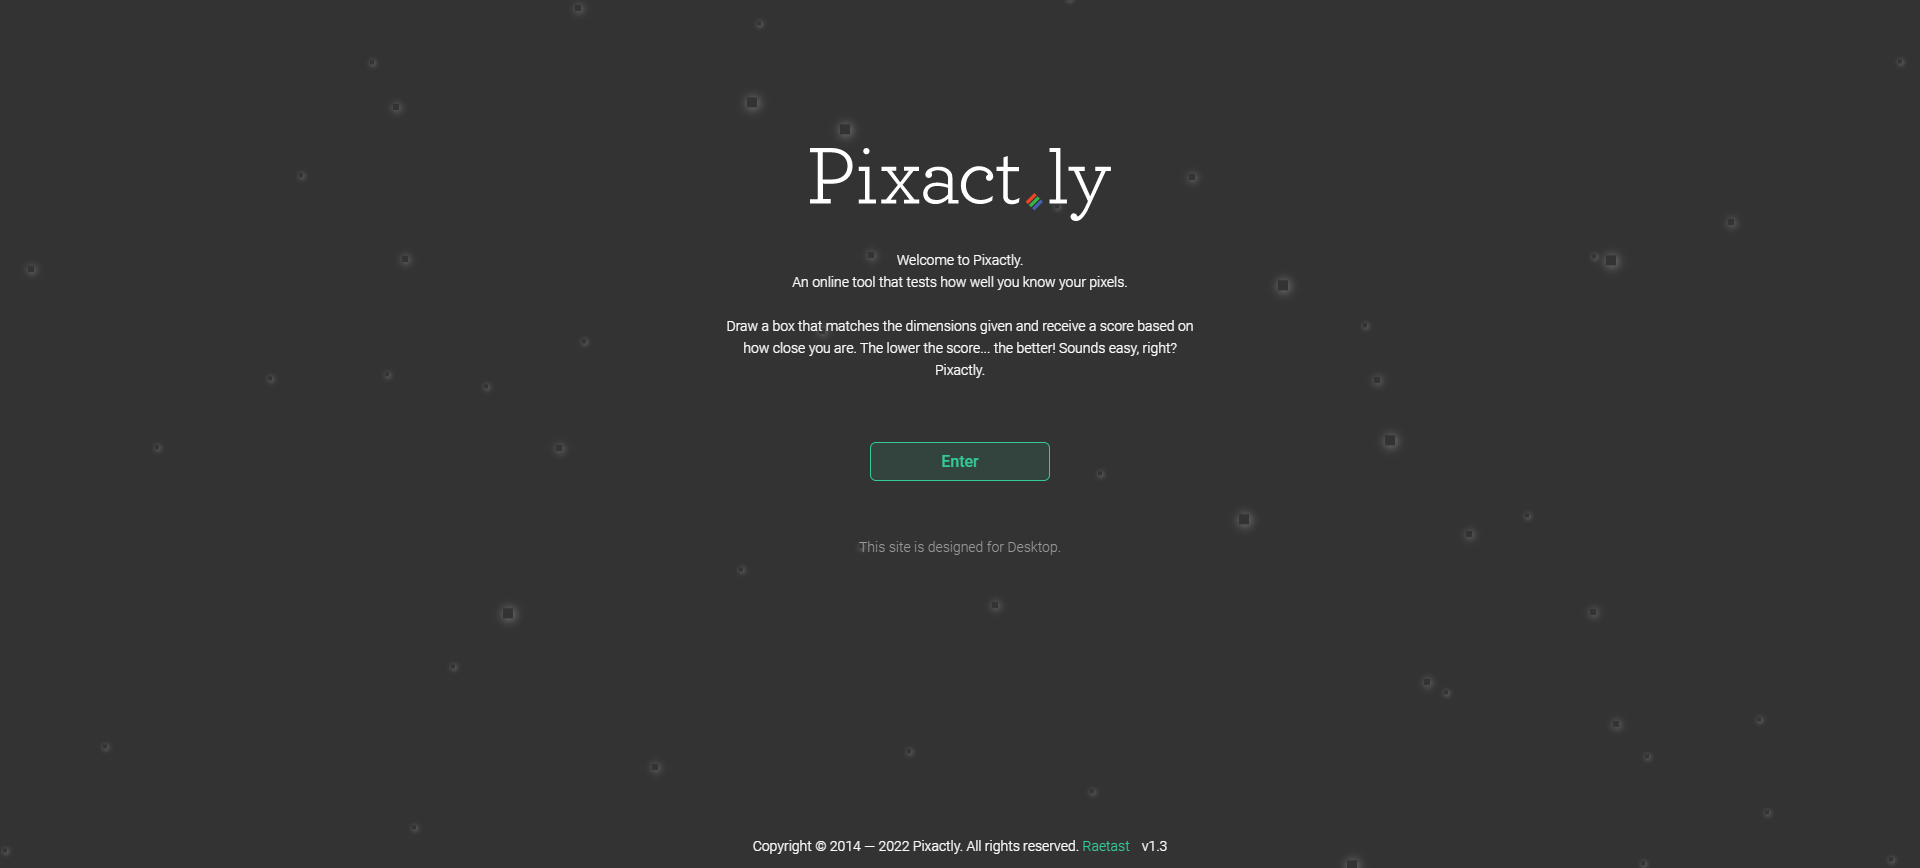 Pixact.ly je online igrica u kojoj provjeravate vještinu određivanje veličine prema pixelima.